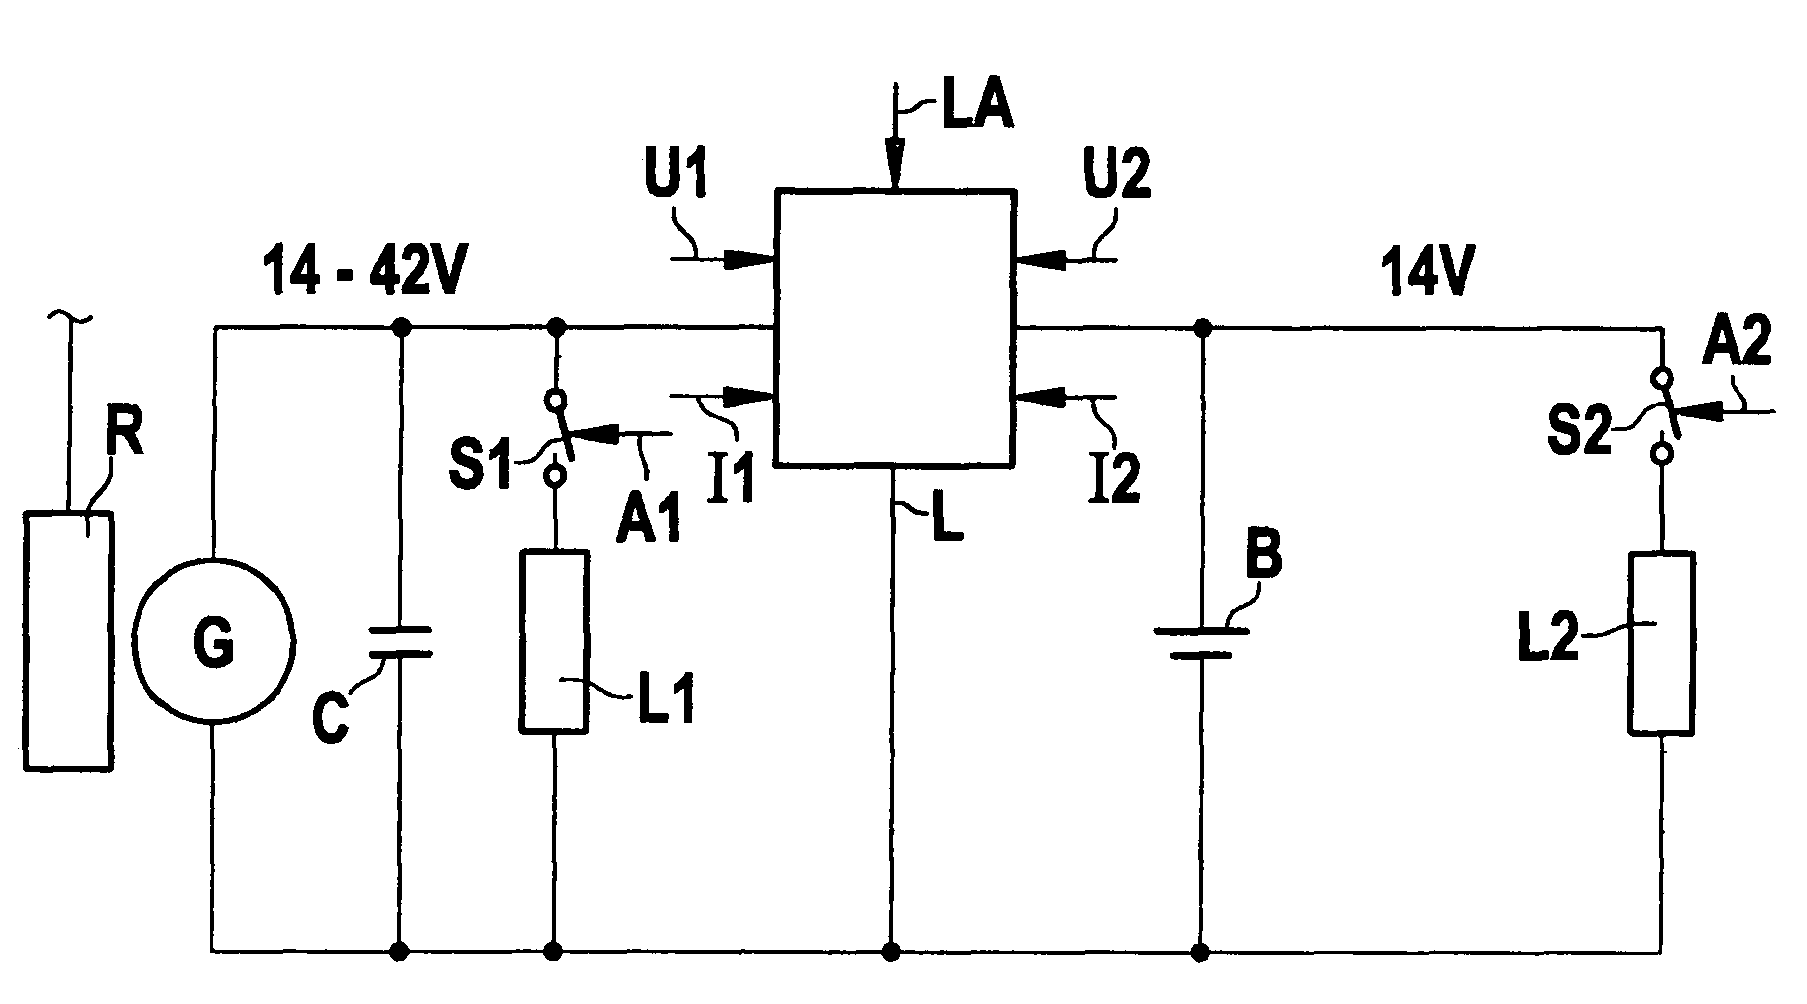 Voltage regulator having overvoltage protection